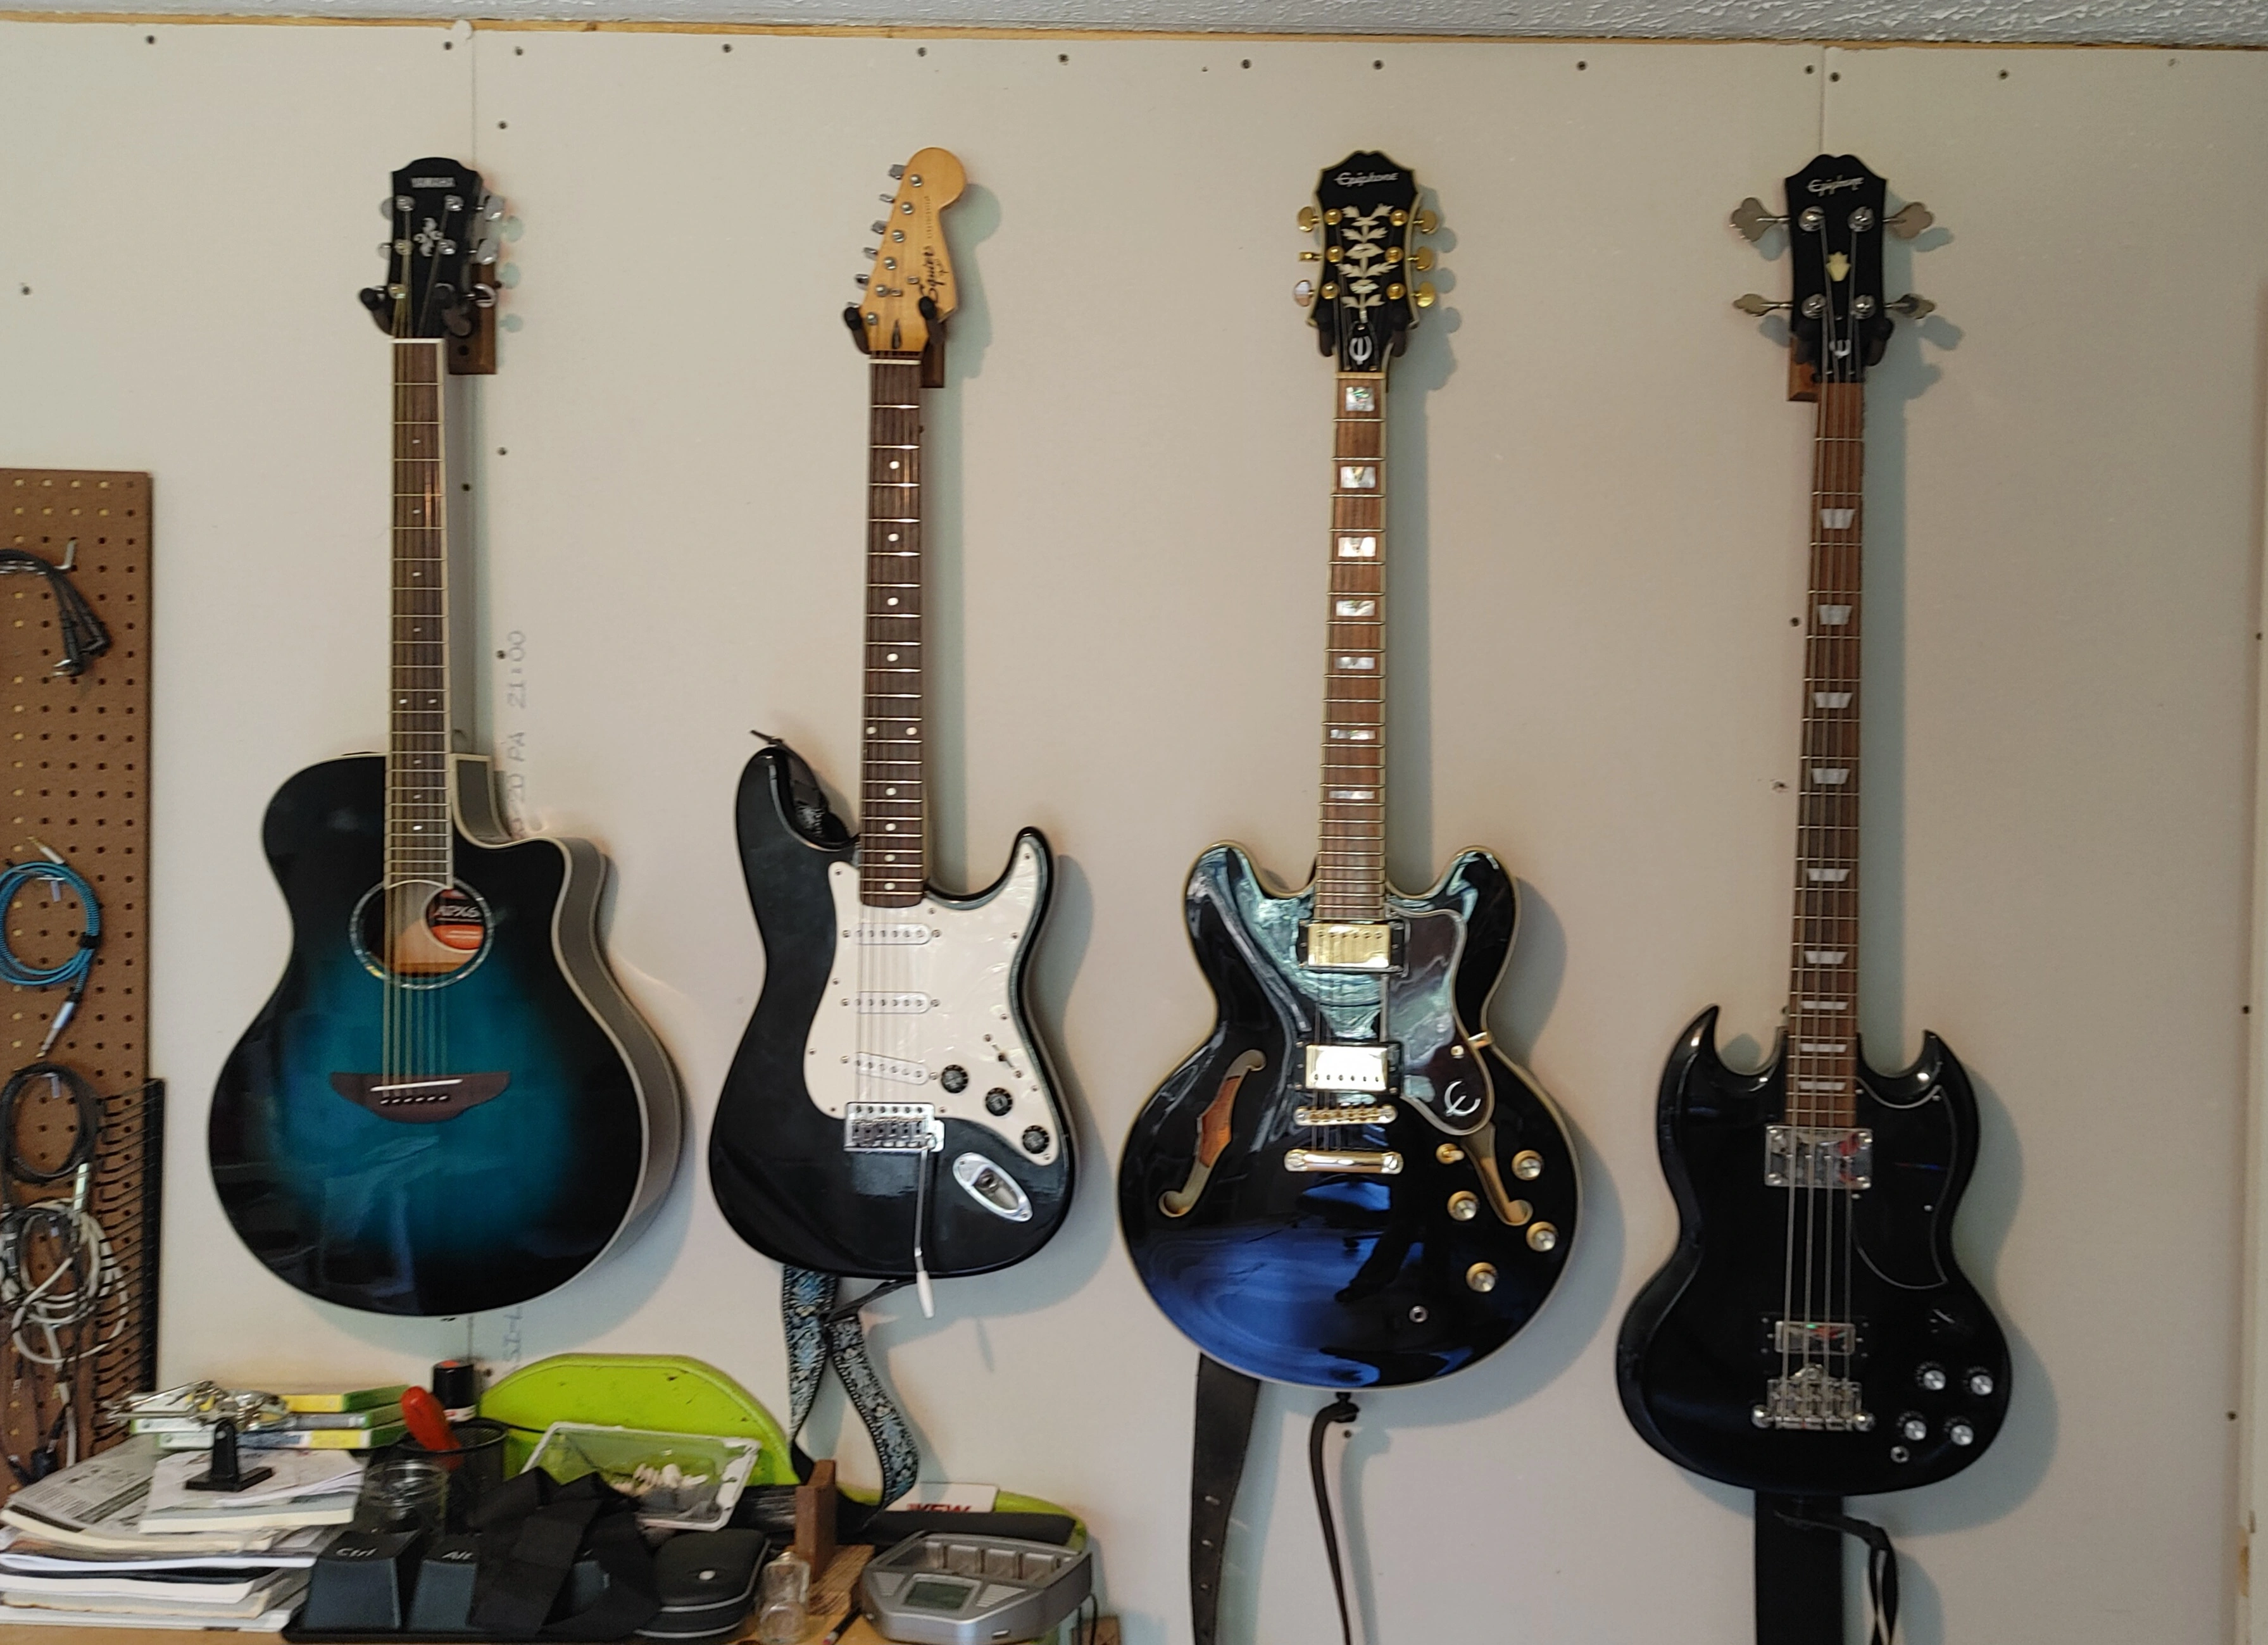 My guitars.